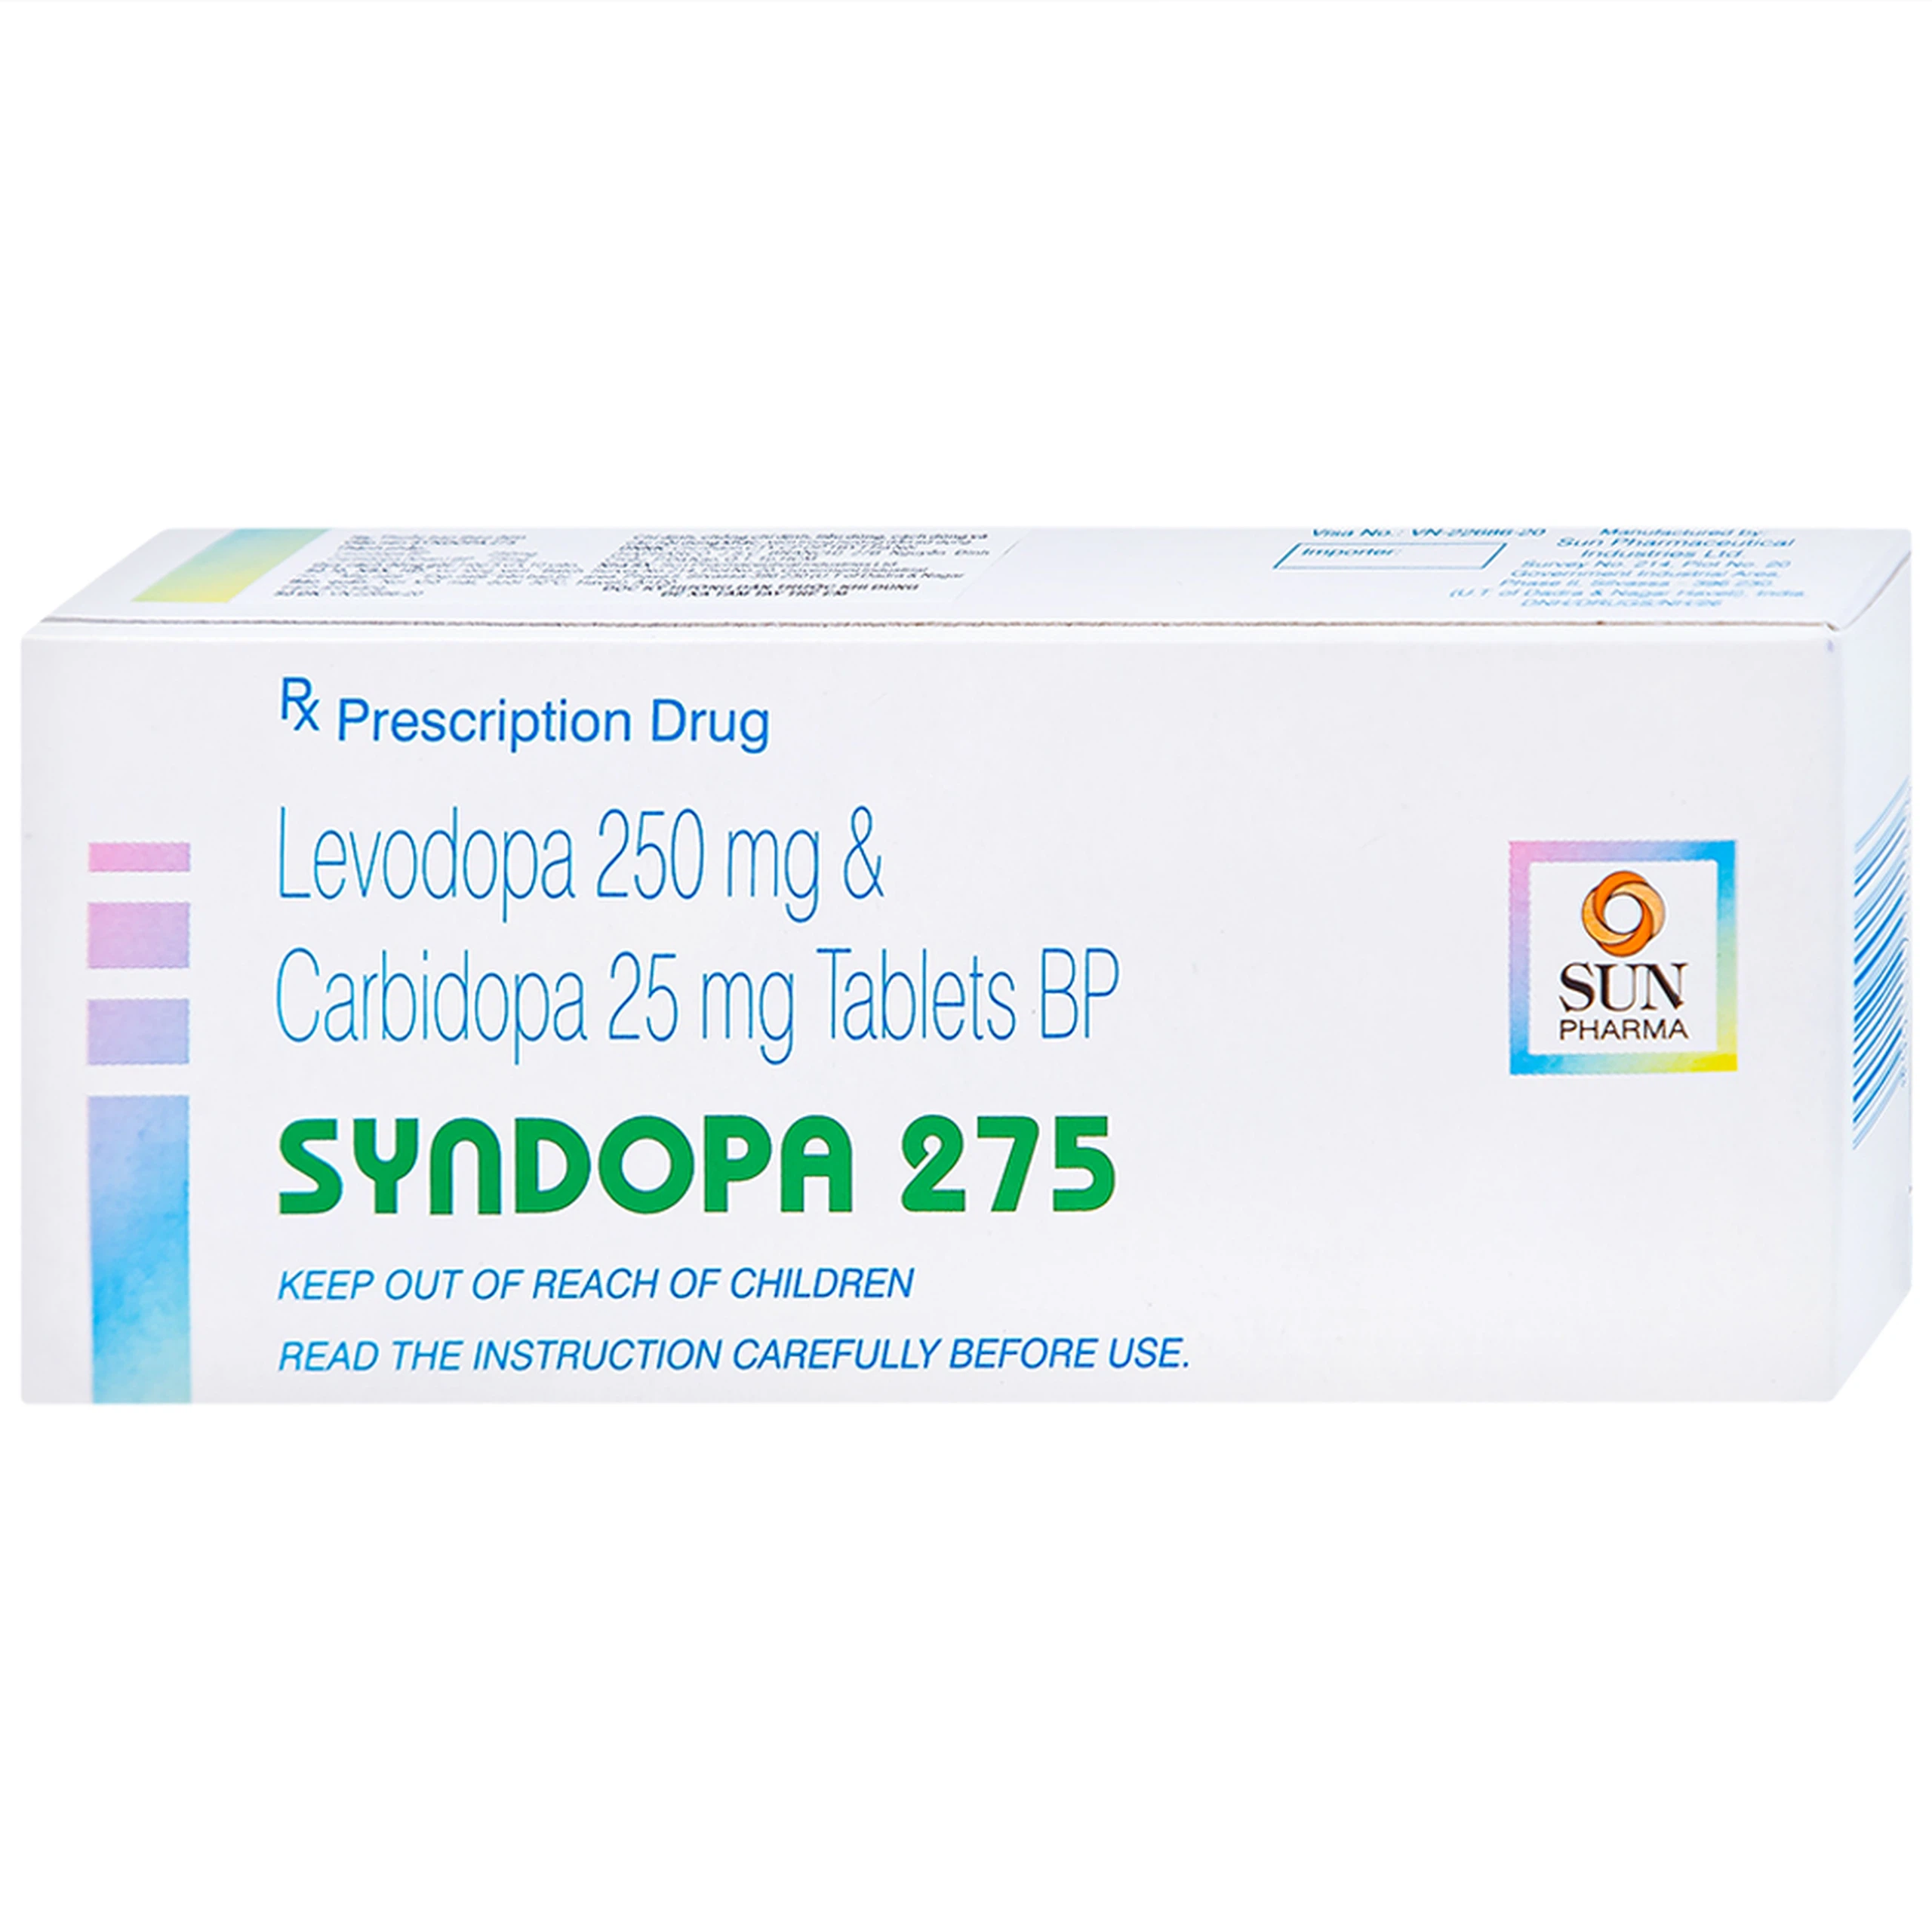 Thuốc Syndopa 275 Sun Pharma điều trị triệu chứng bệnh Parkinson (5 vỉ x 10 viên)